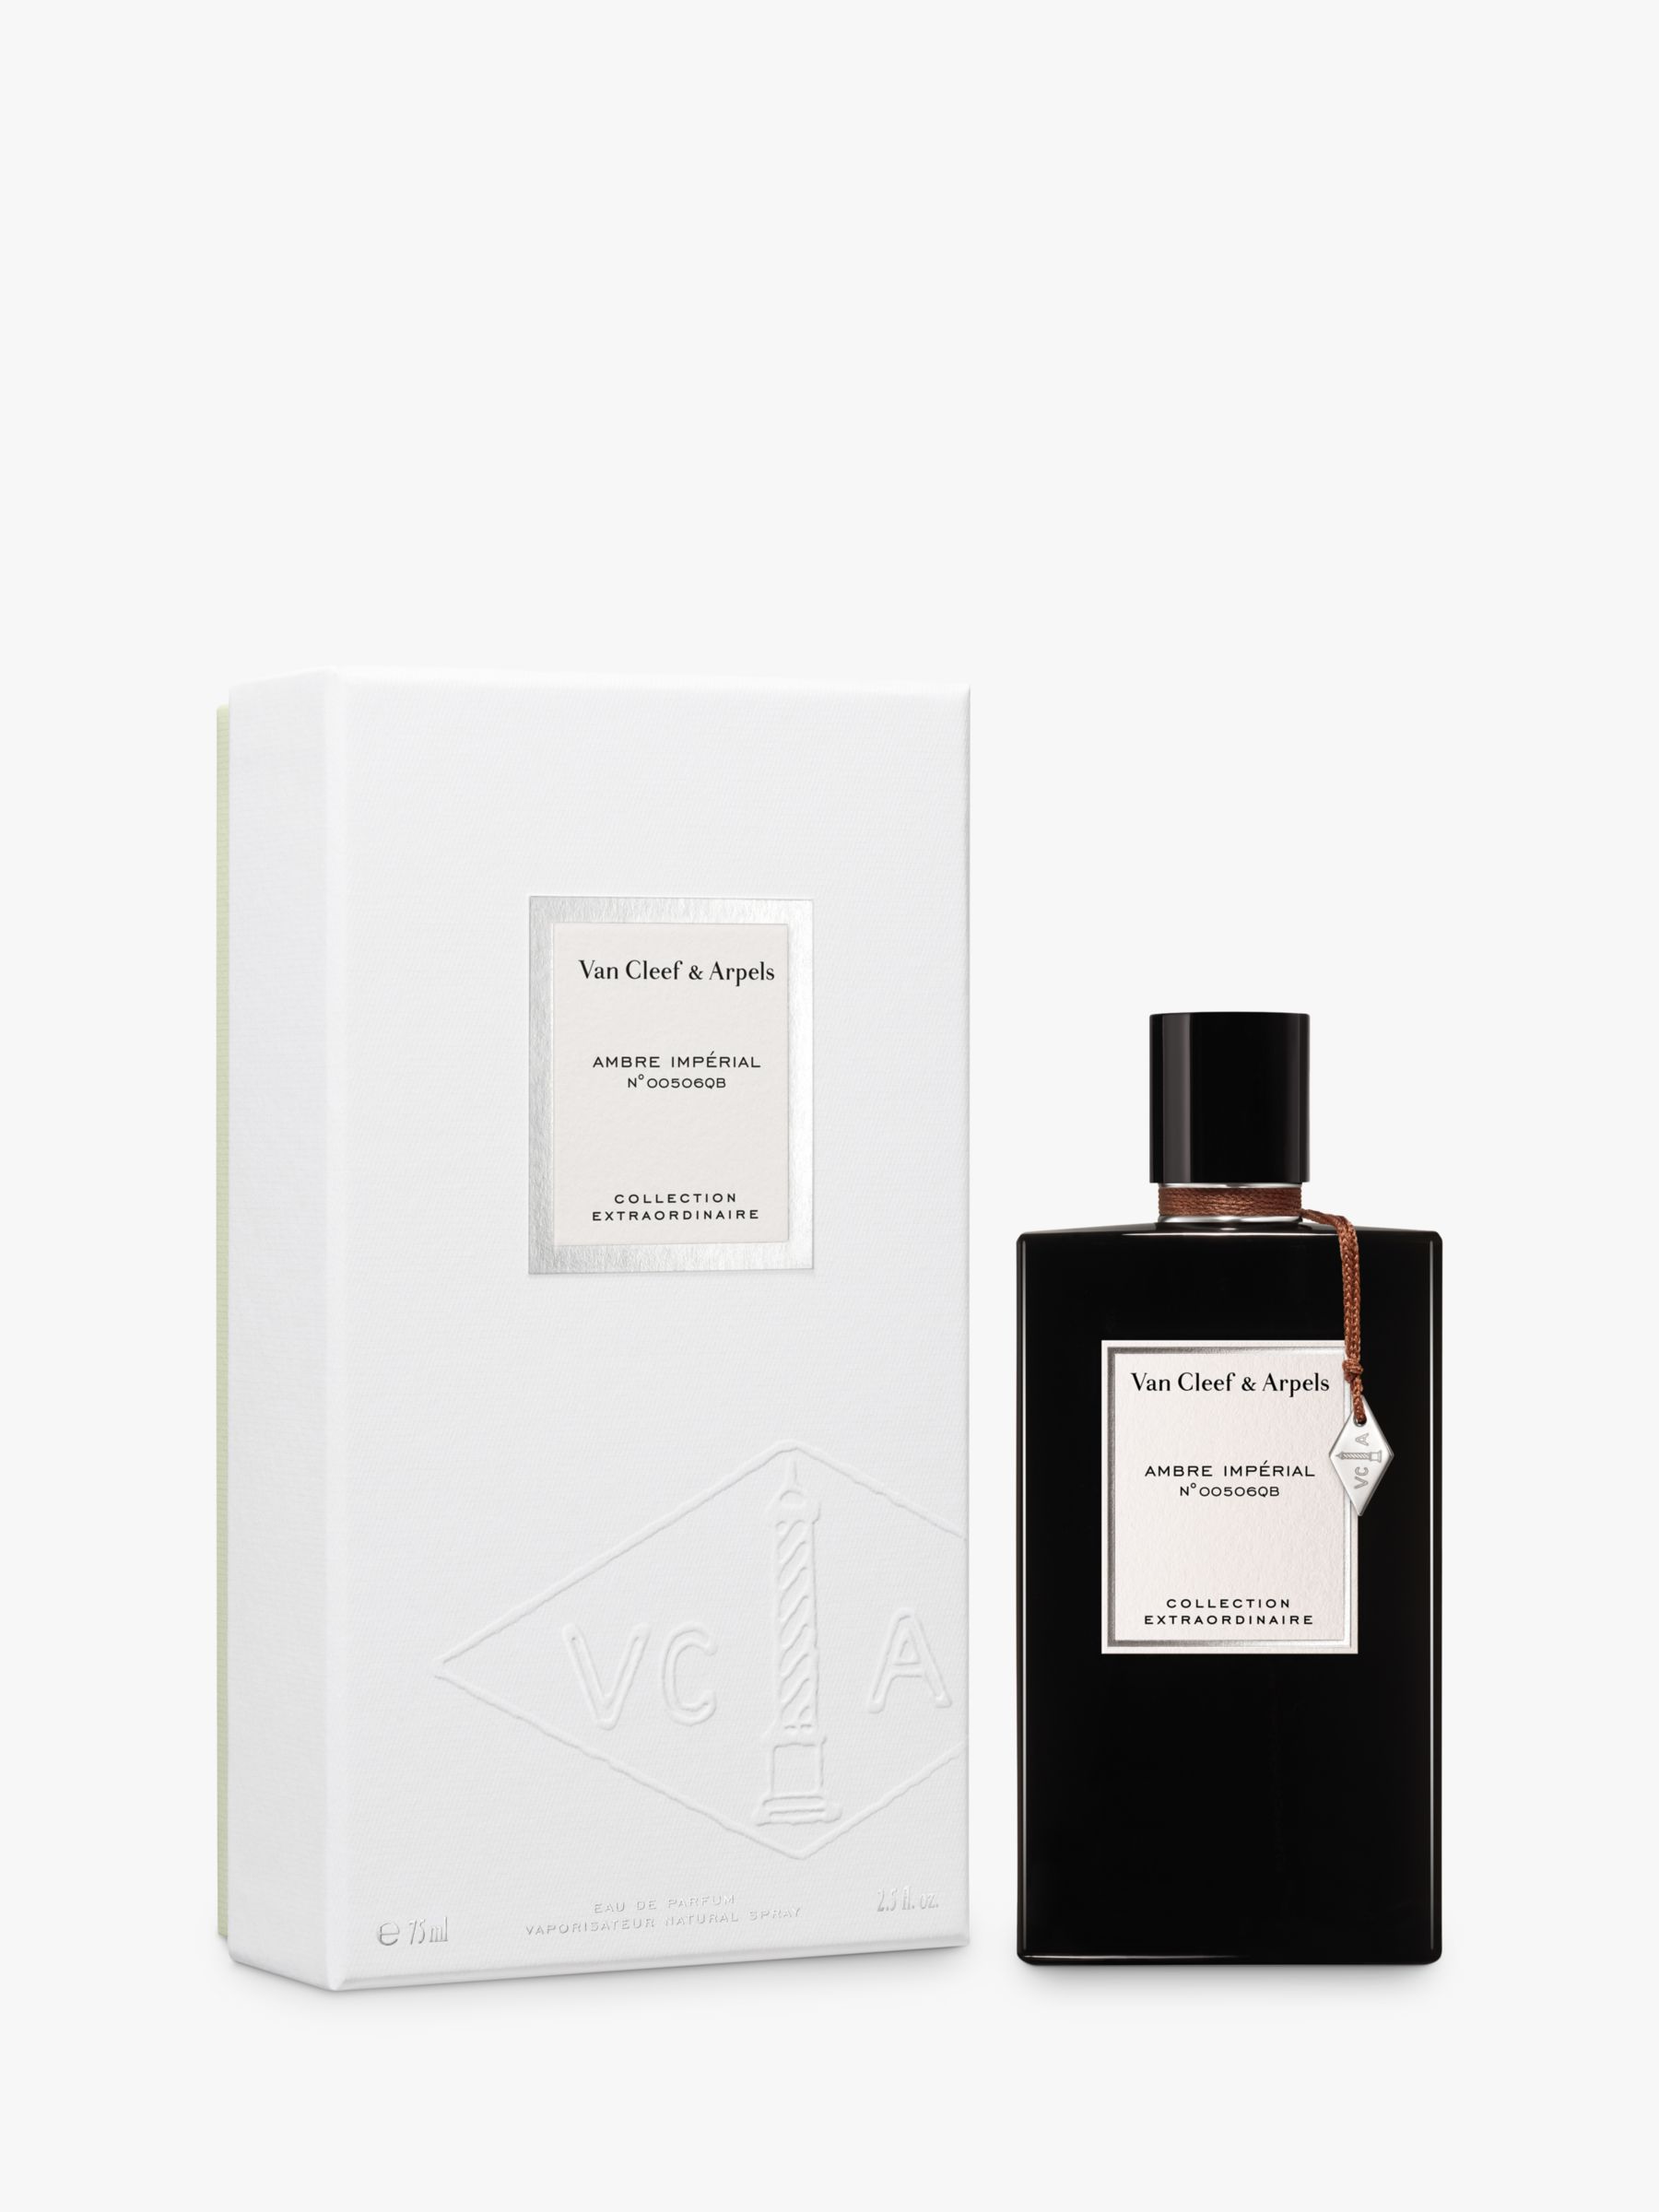 Van Cleef & Arpels Collection Extraordinaire Ambre Impérial Eau de Parfum, 75ml 3